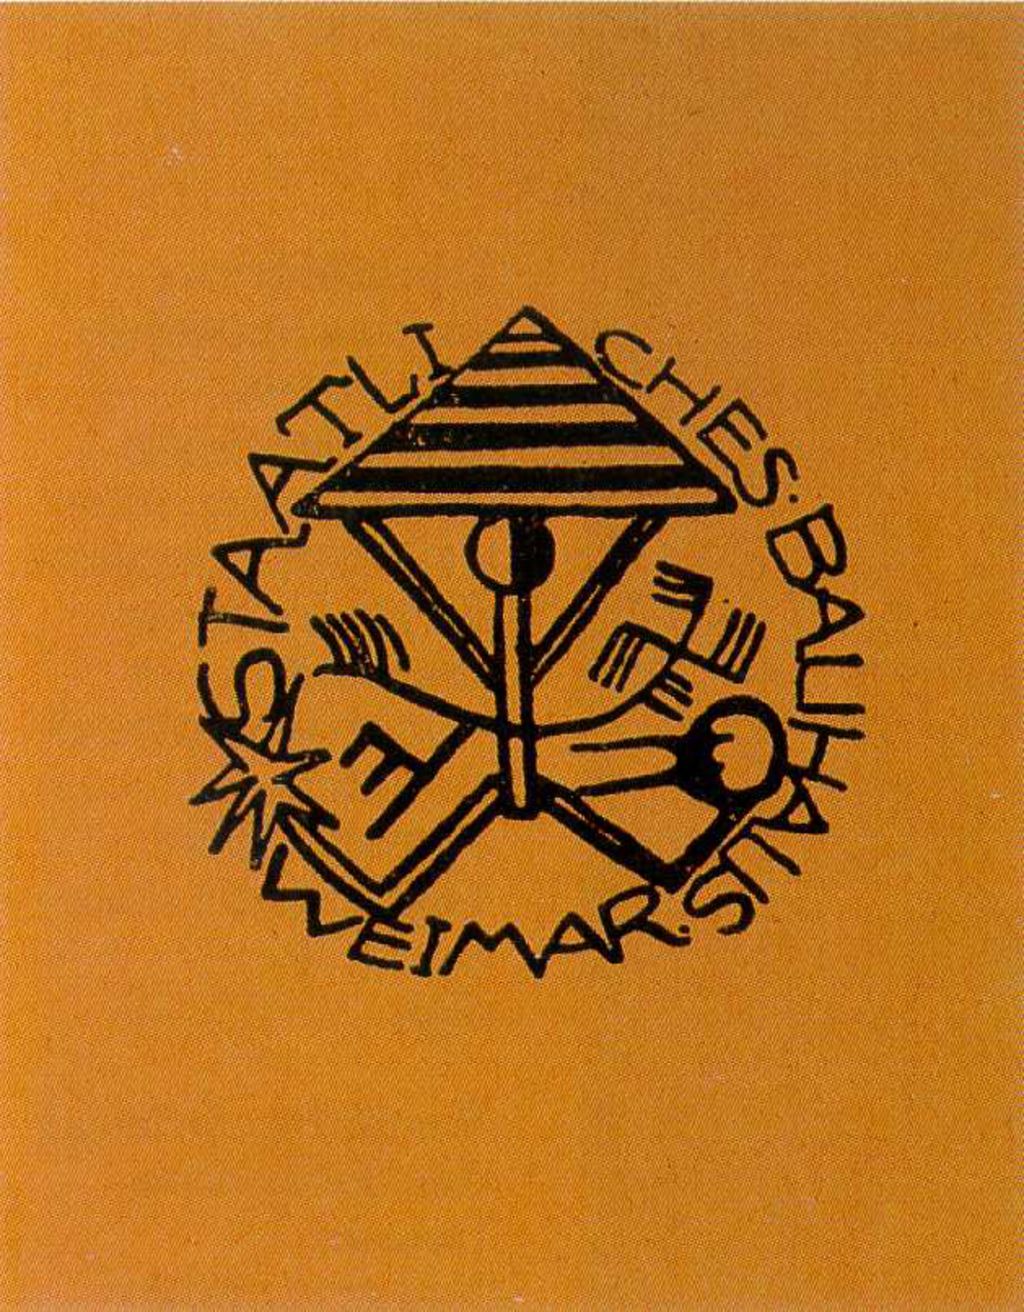 Druckschrift: Satzung des Bauhaus Weimar, 1921